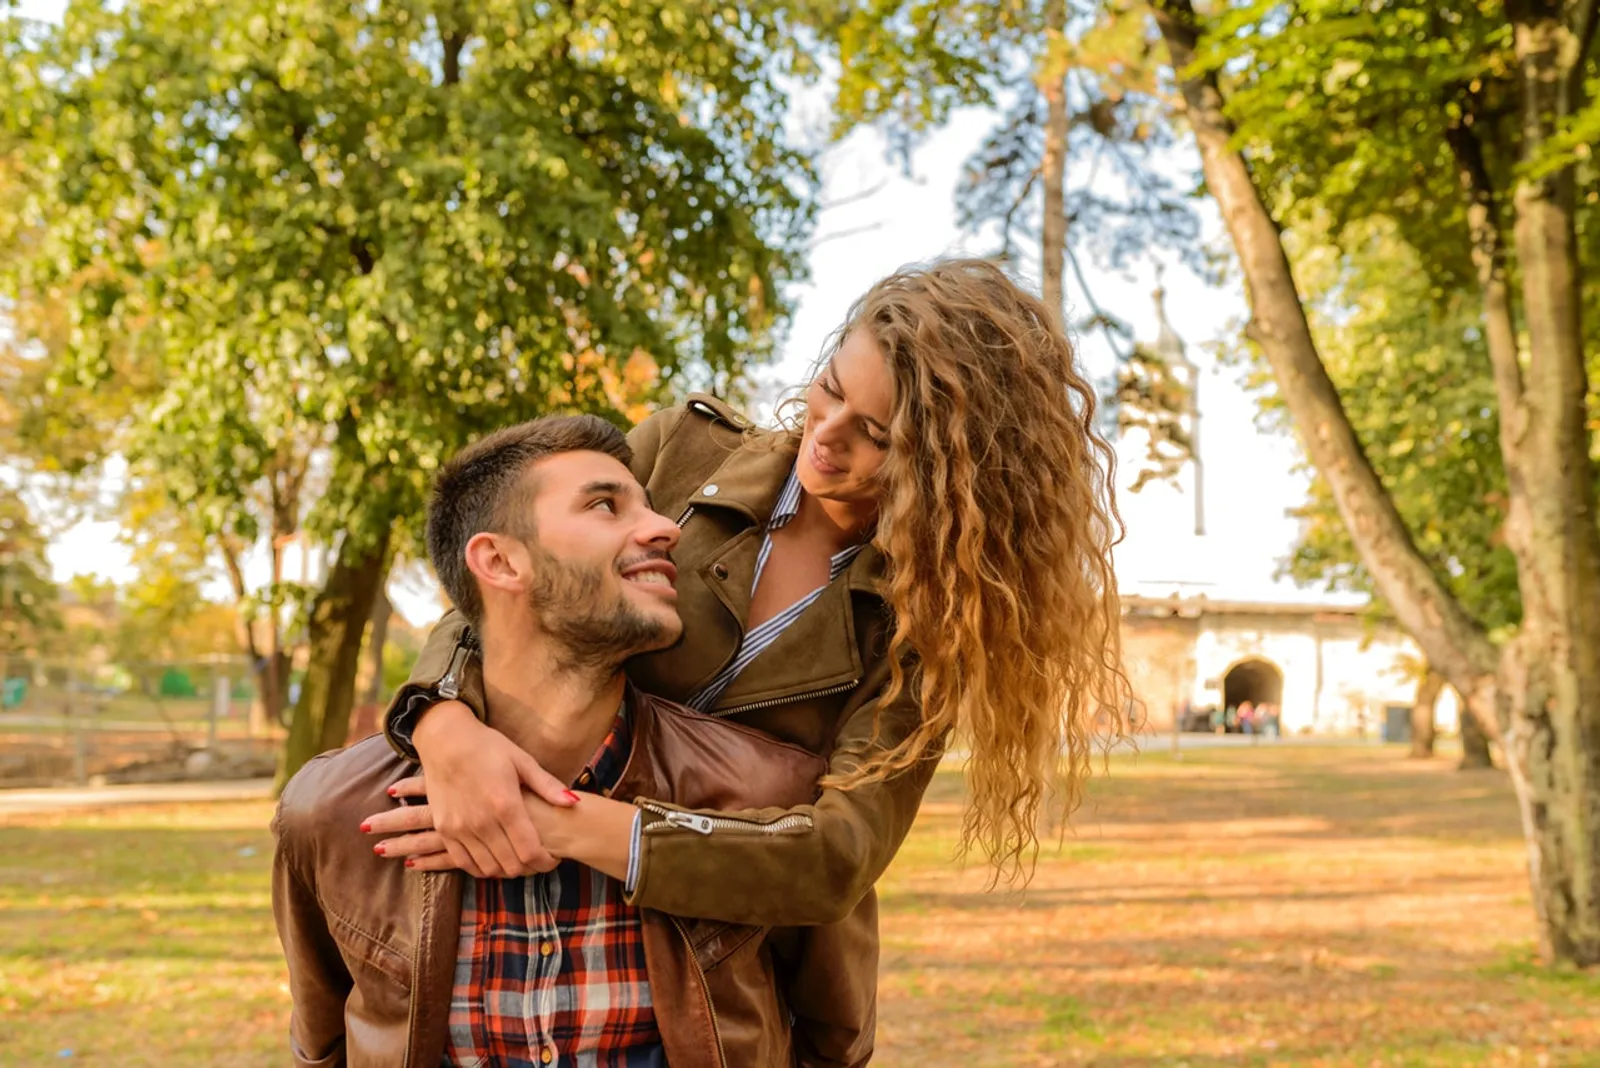 Hindari 15 Relationship Goals Ini, Bikin Hubungan Nggak Sehat!